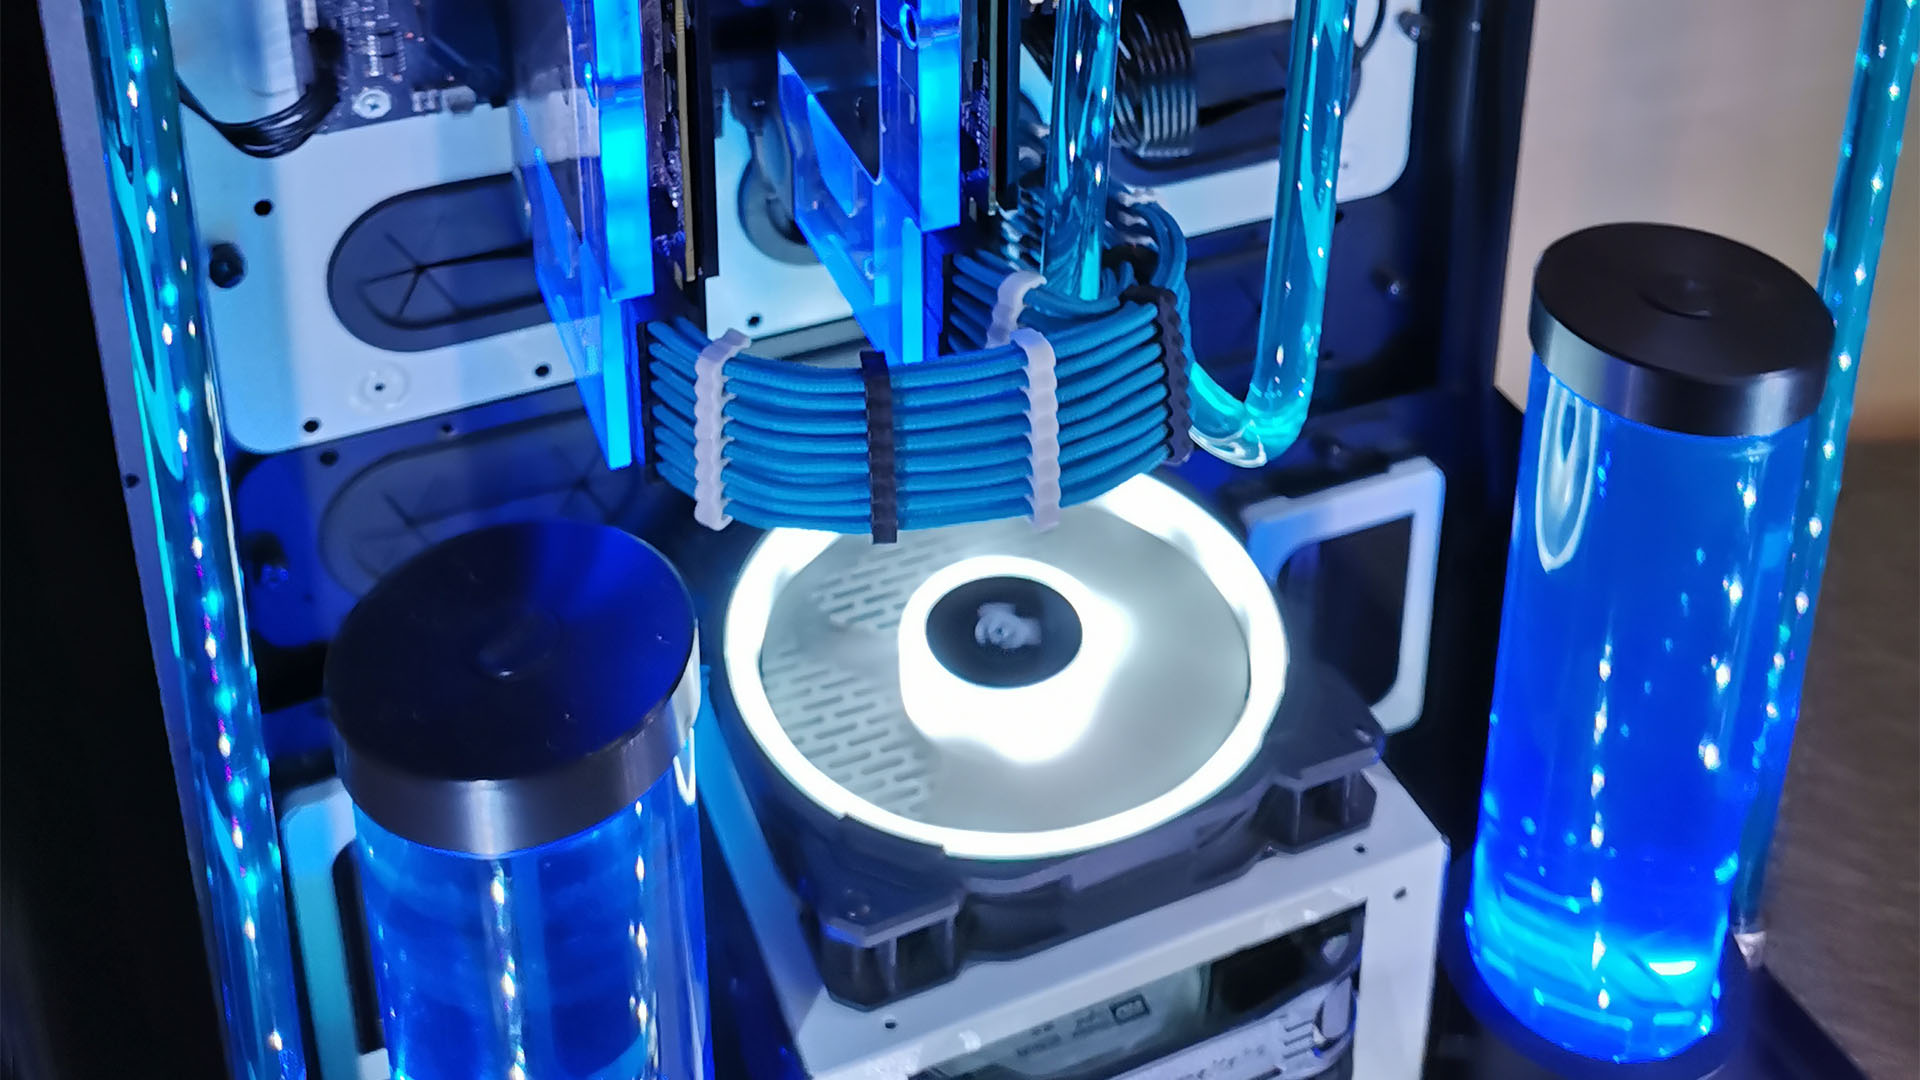 Le PC de jeu refroidi par eau dans un boîtier bleu Thermaltake Tower 900